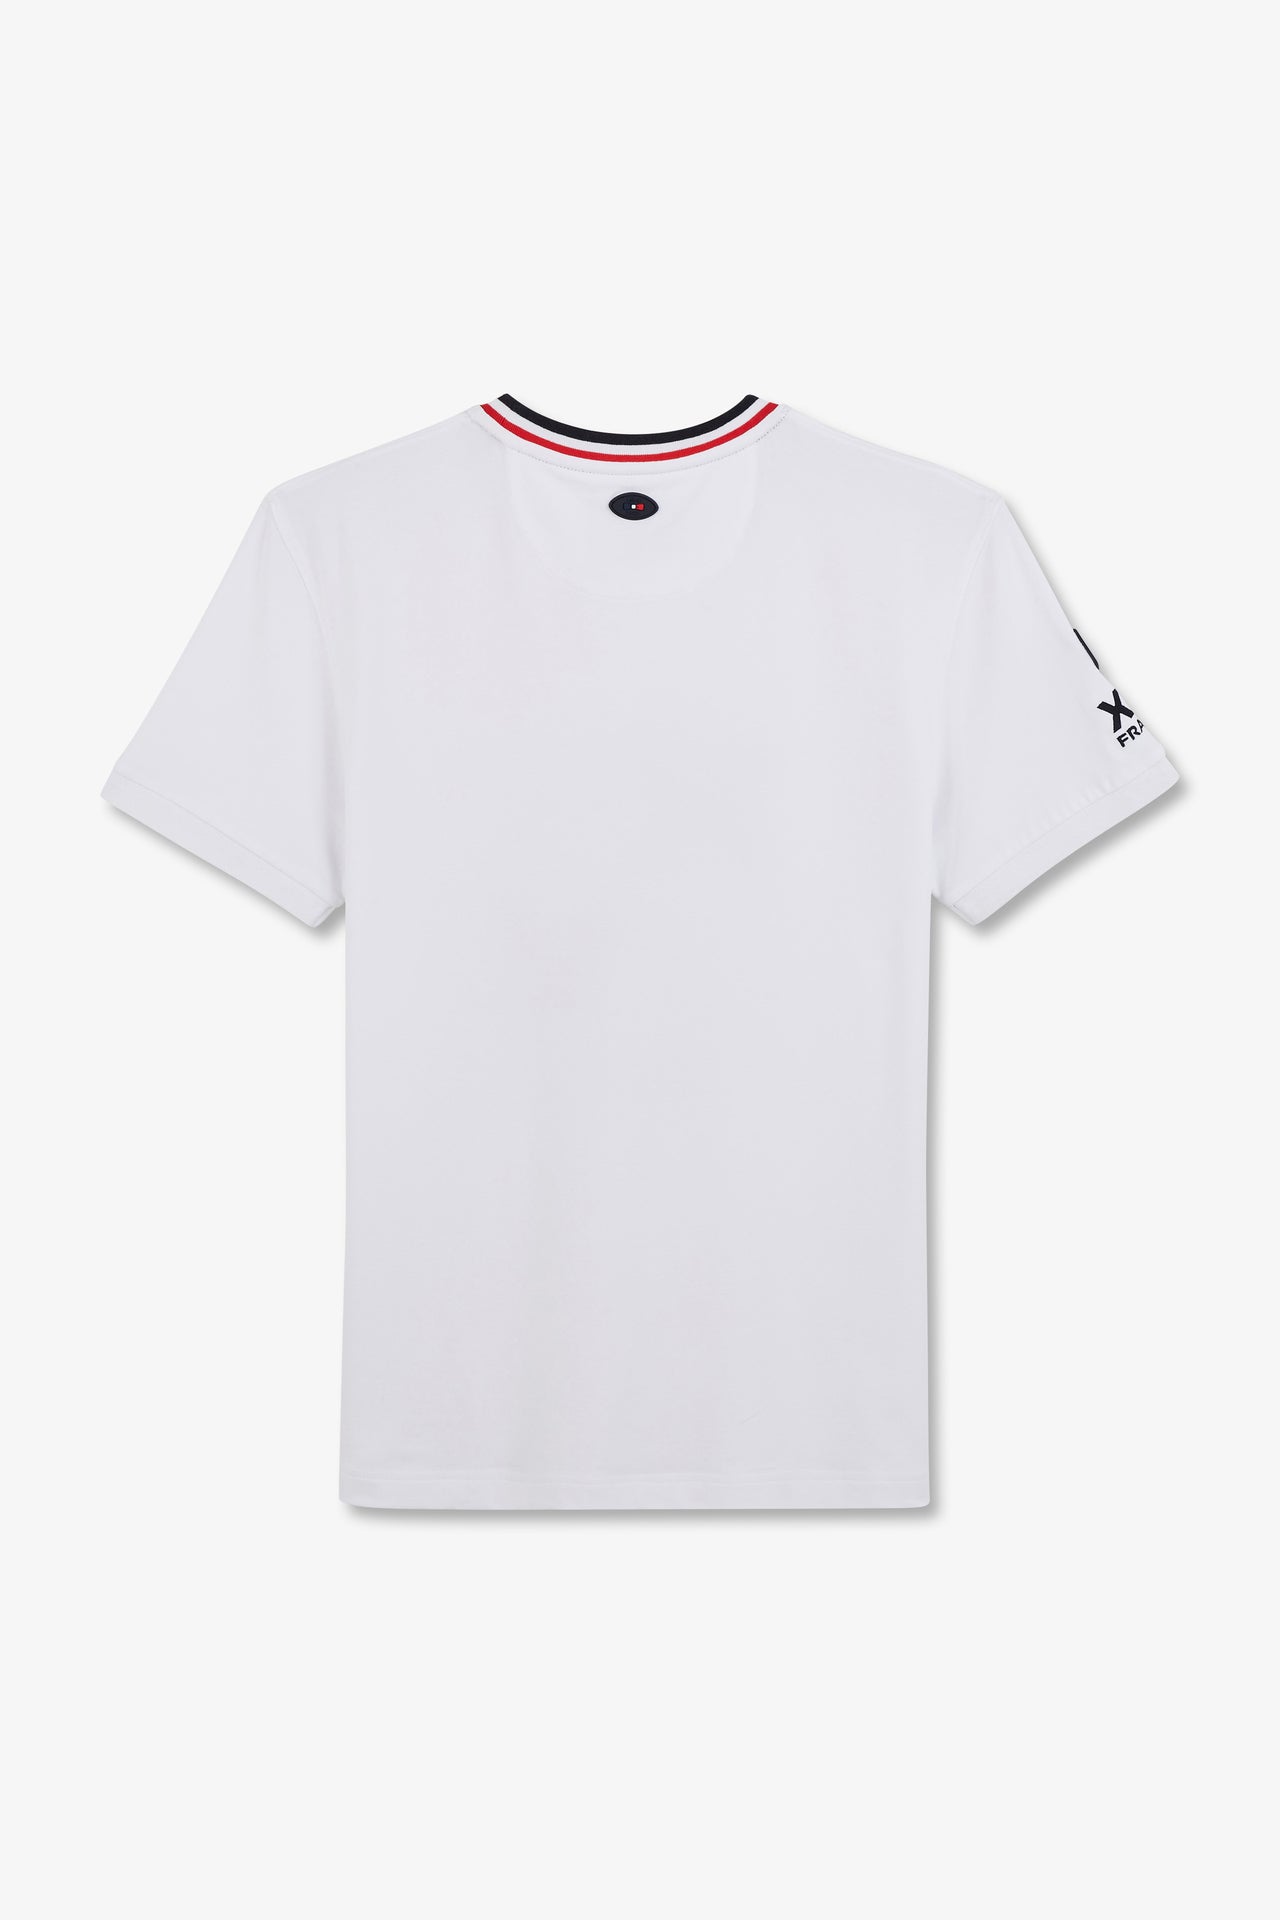 T-shirt à manches courtes blanc imprimé XV de France - Image 4